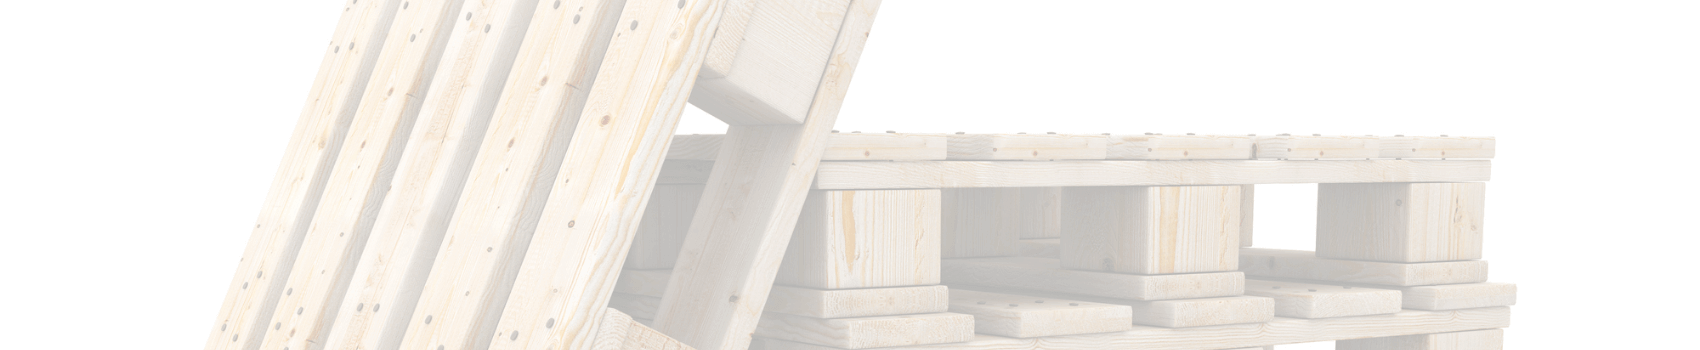 Reglamentación para los embalajes de madera